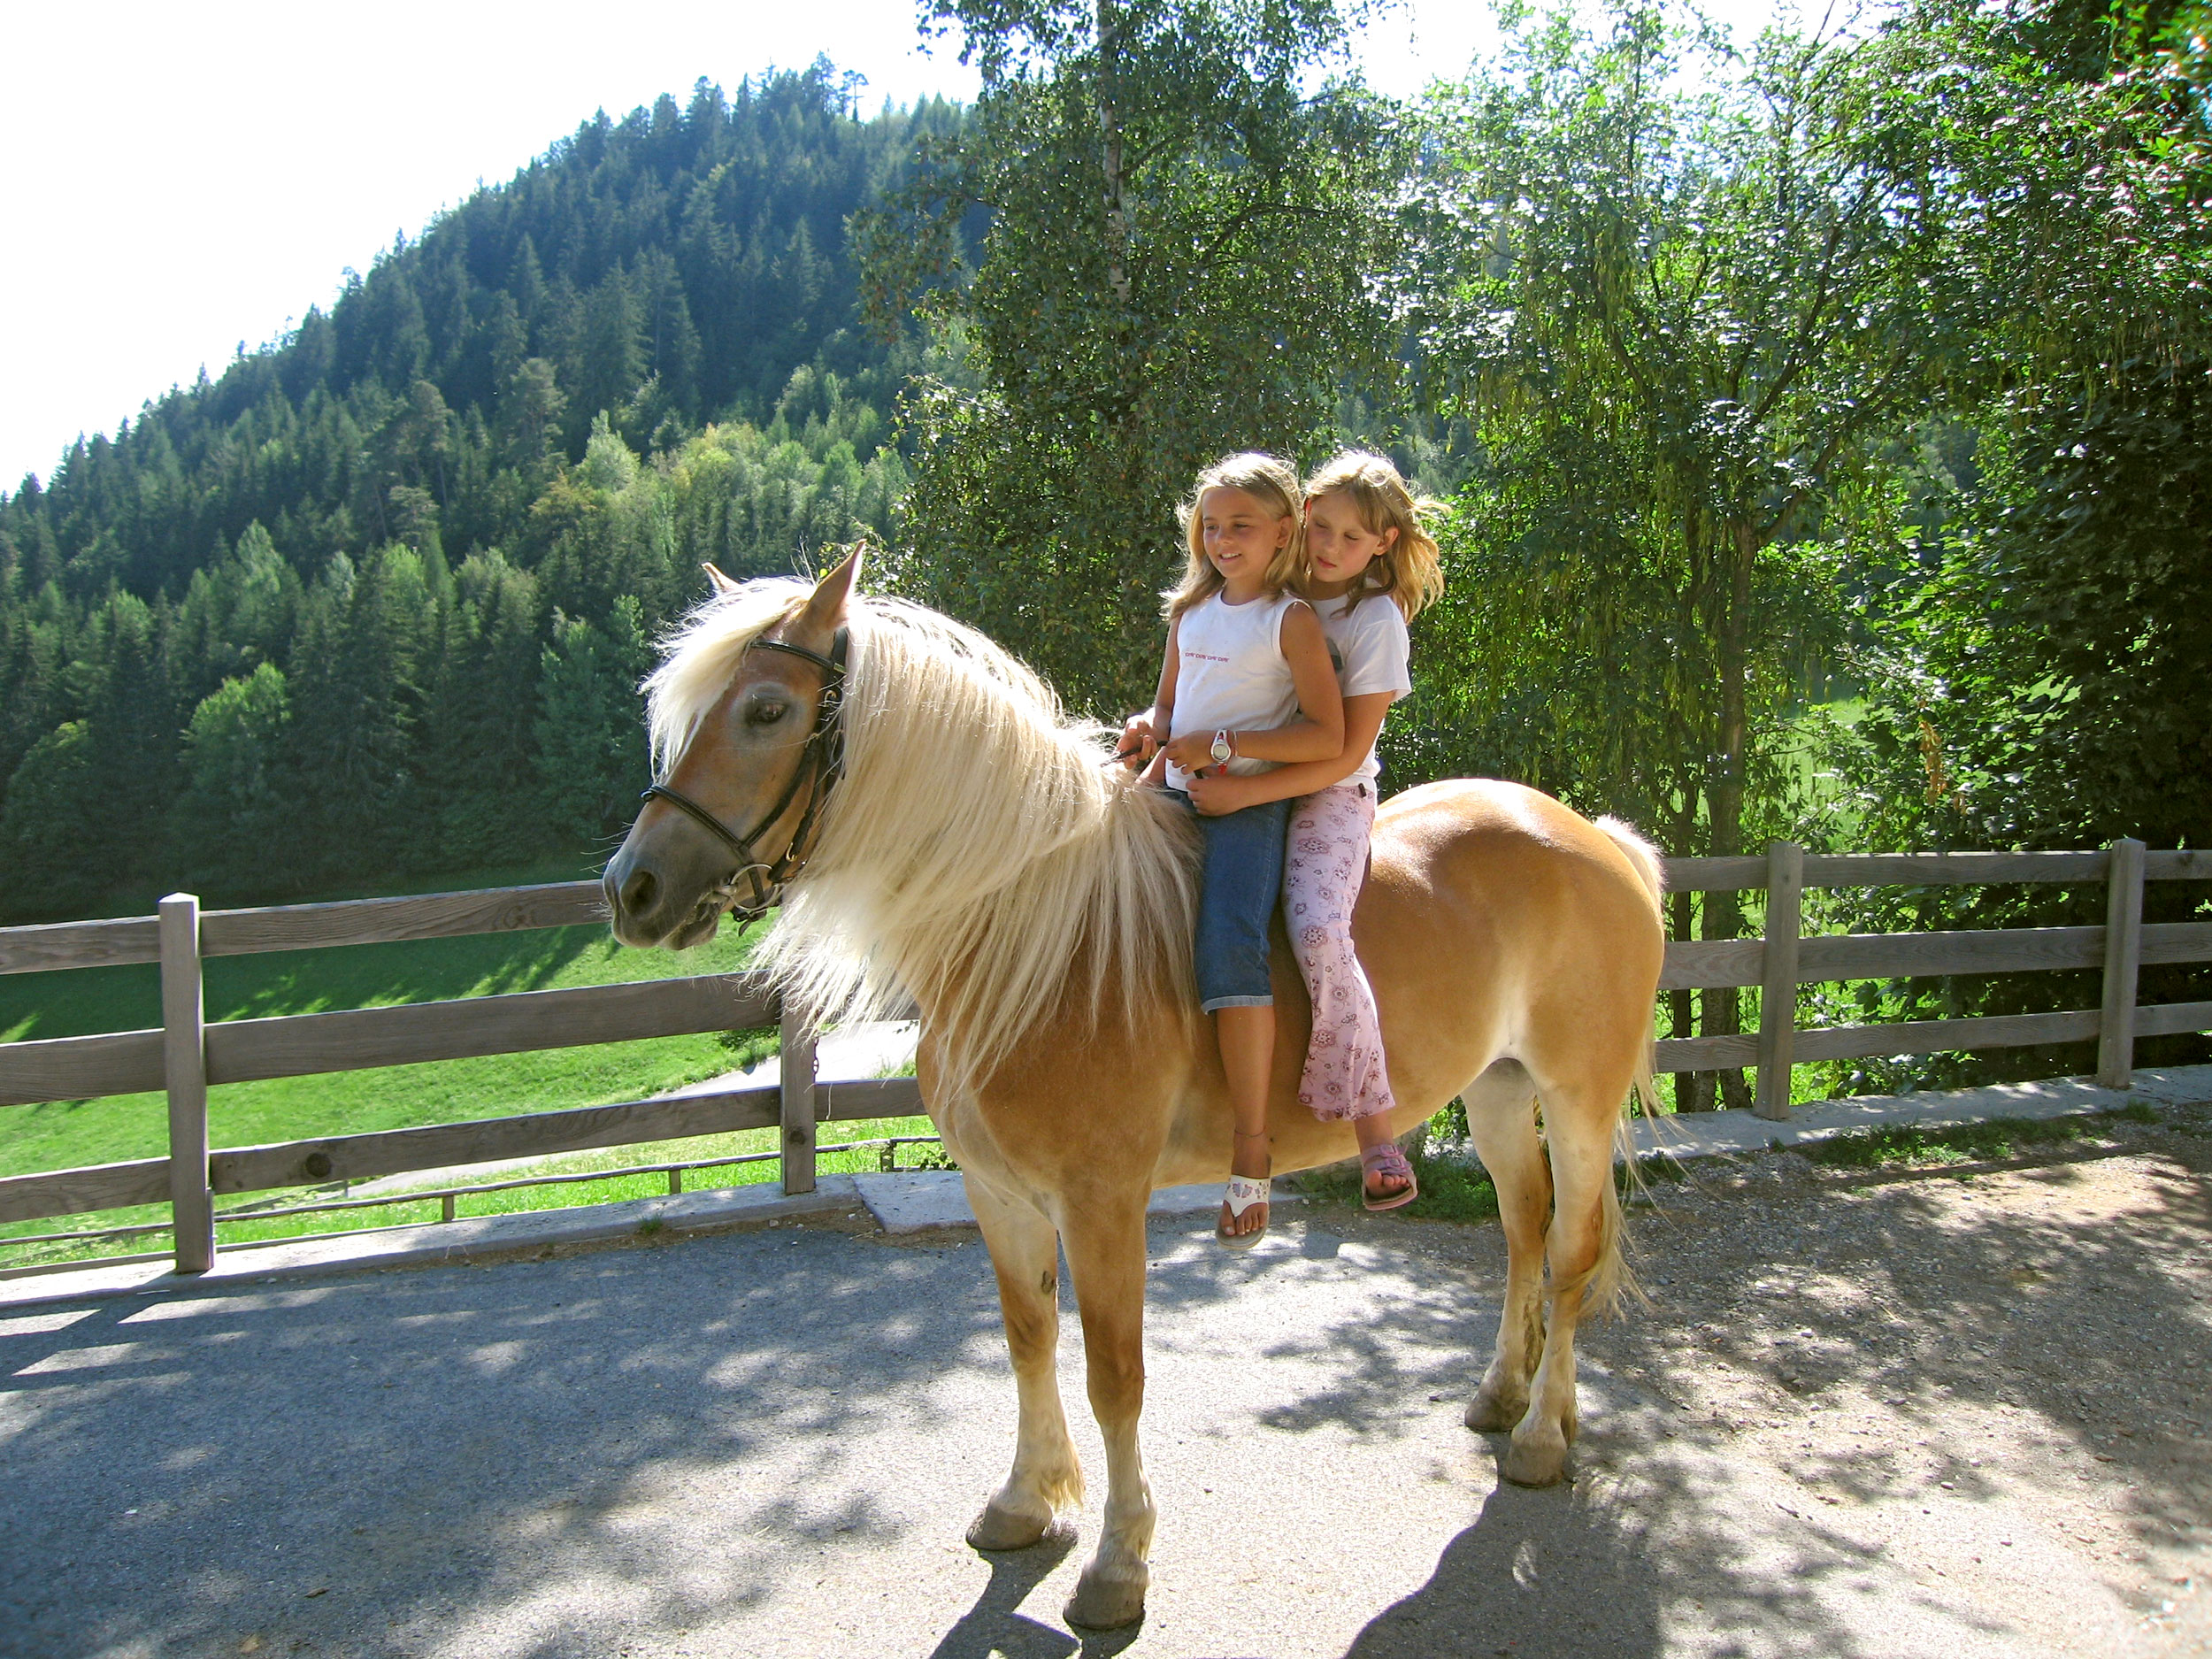 Hafling Reitstall Sulfner Kinder auf dem Rücken der Pferde | Maneggio Avelengo Sulfner Bambini a cavallo | Hafling Sulfner Riding Stable Children on horseback